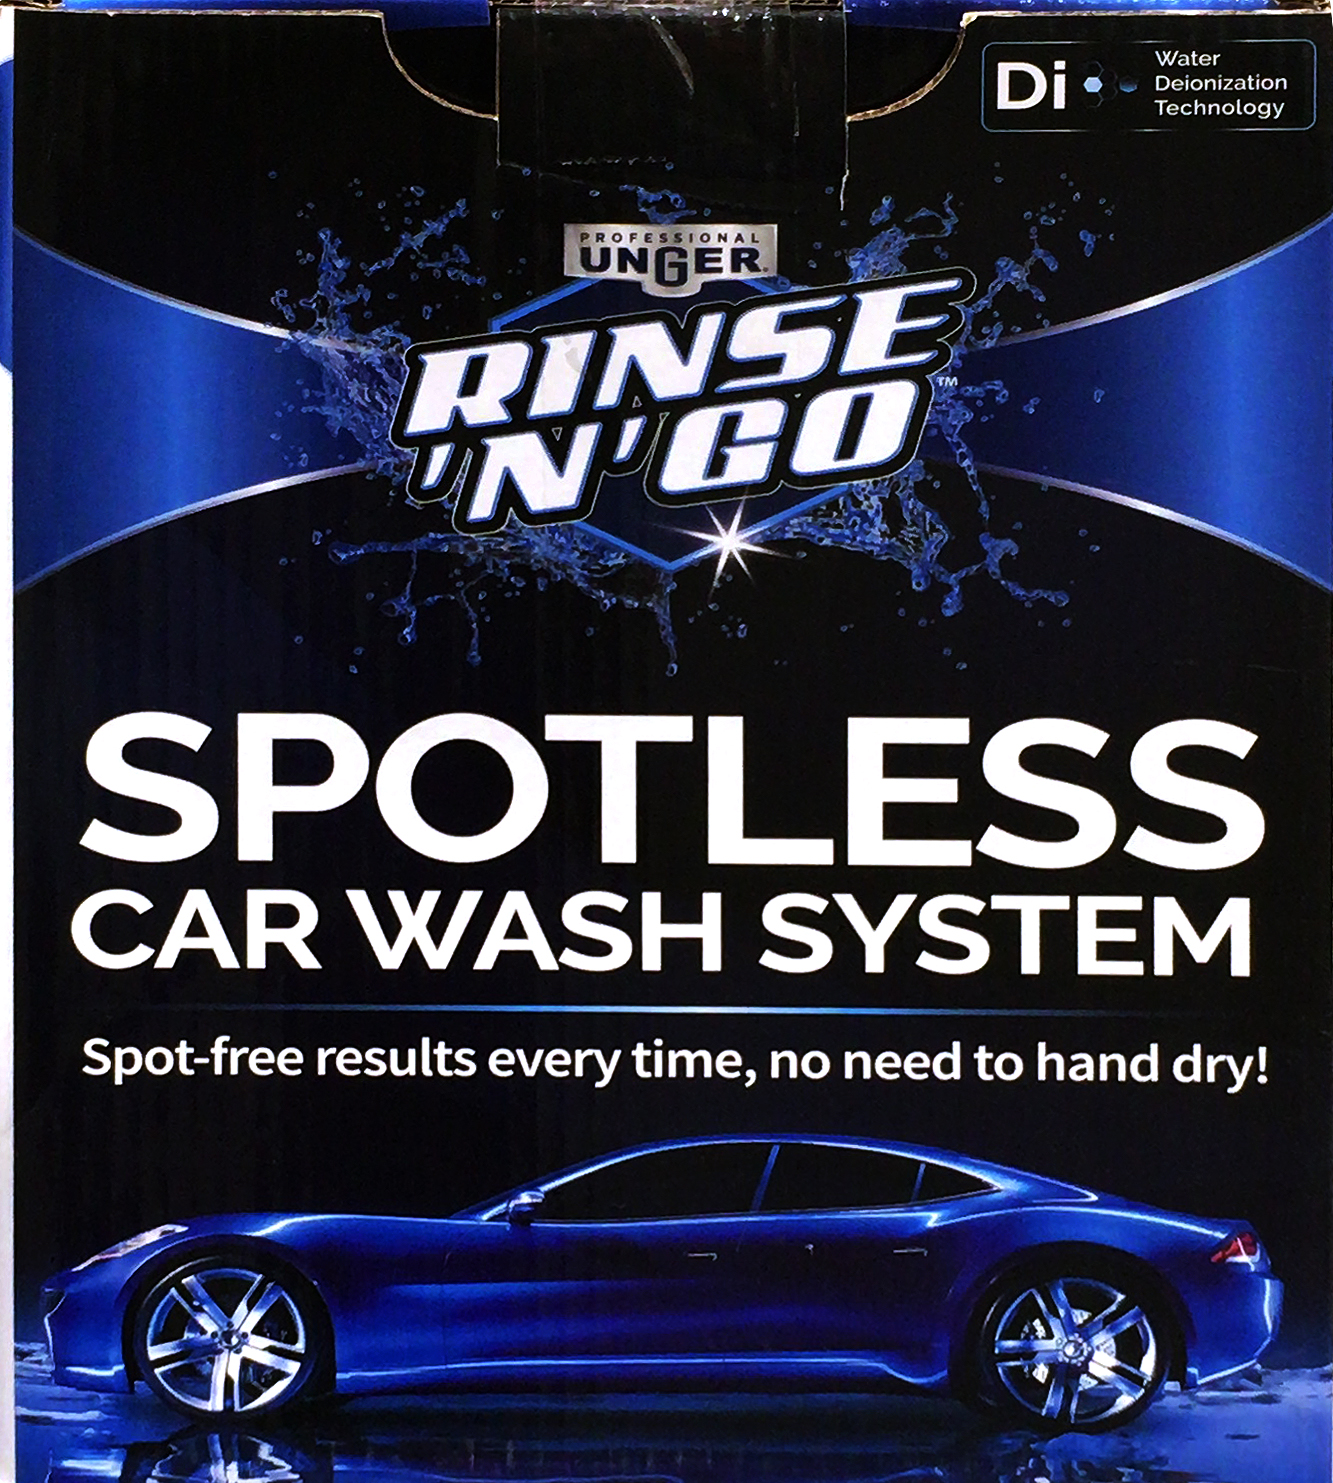 UNGER 洗車用純水器 スポットレスカーウォッシュシステムの最新価格や